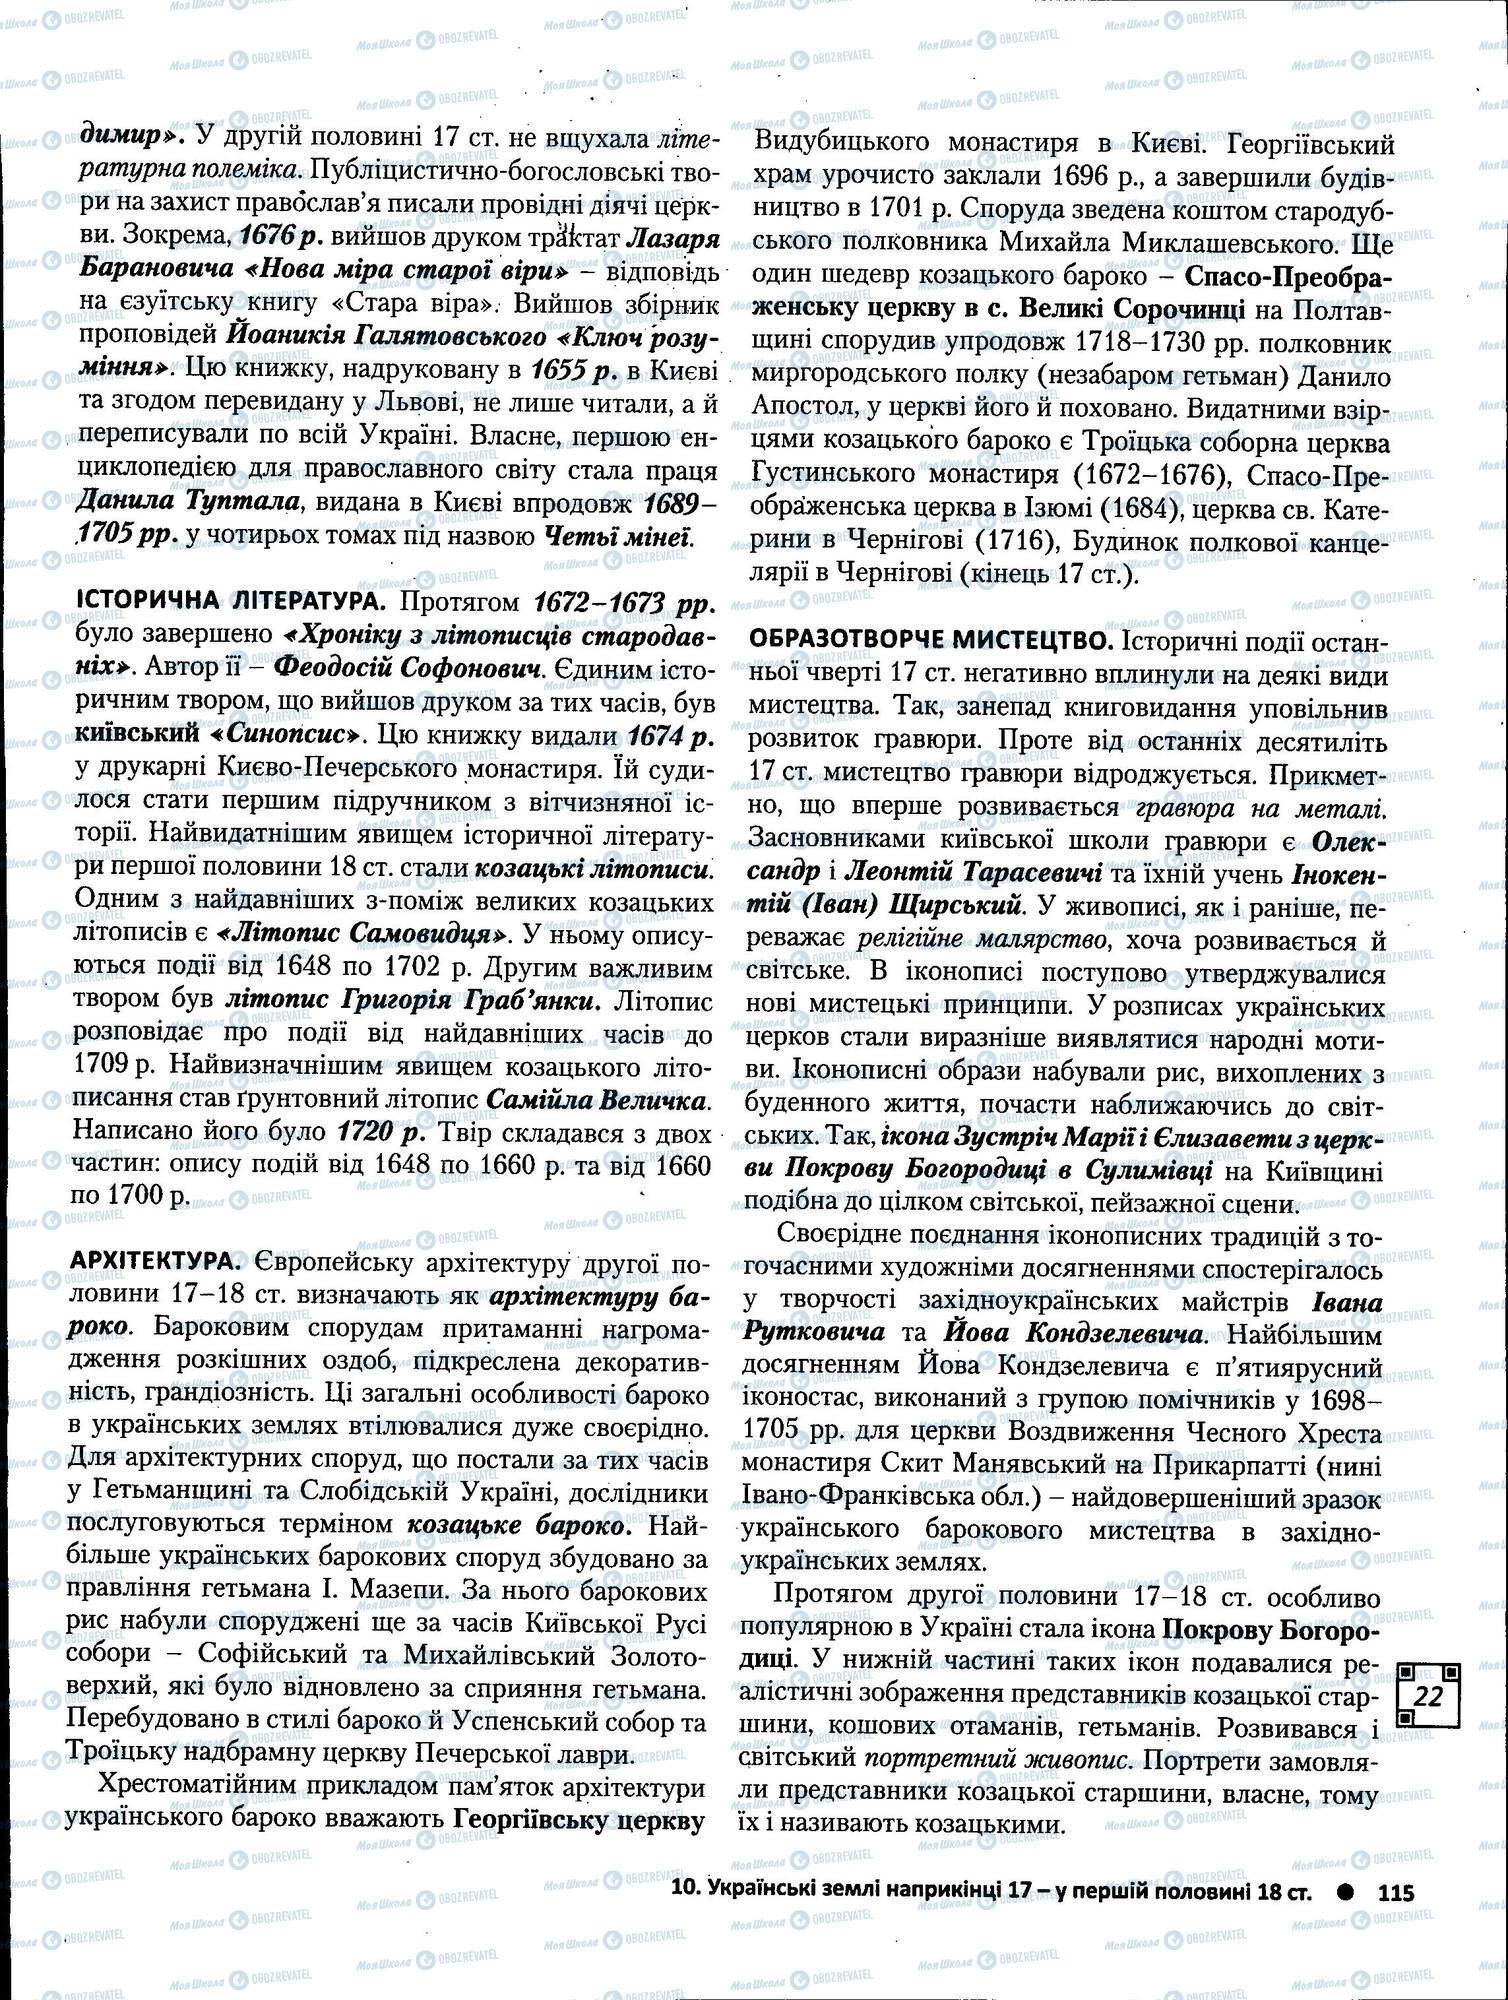 ЗНО История Украины 11 класс страница 115